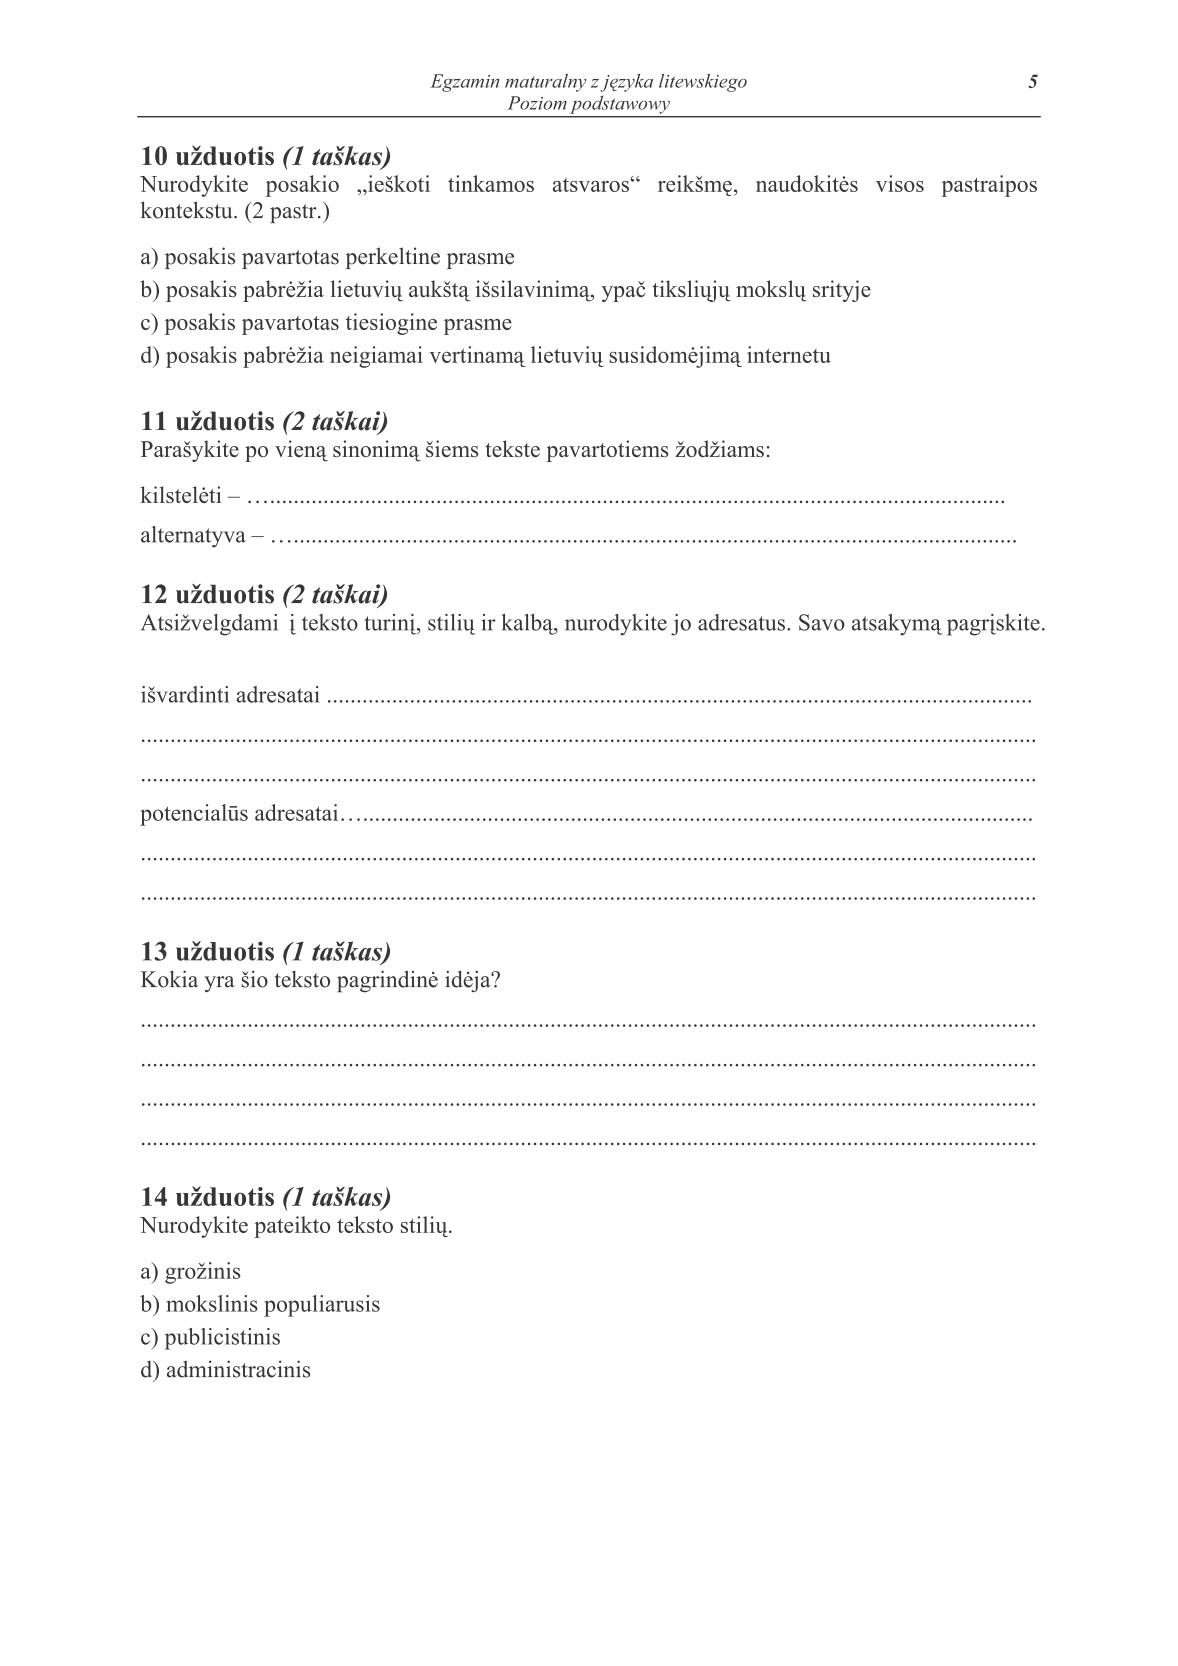 pytania-jezyk-litewski-poziom-podstawowy-matura-2014-str.5